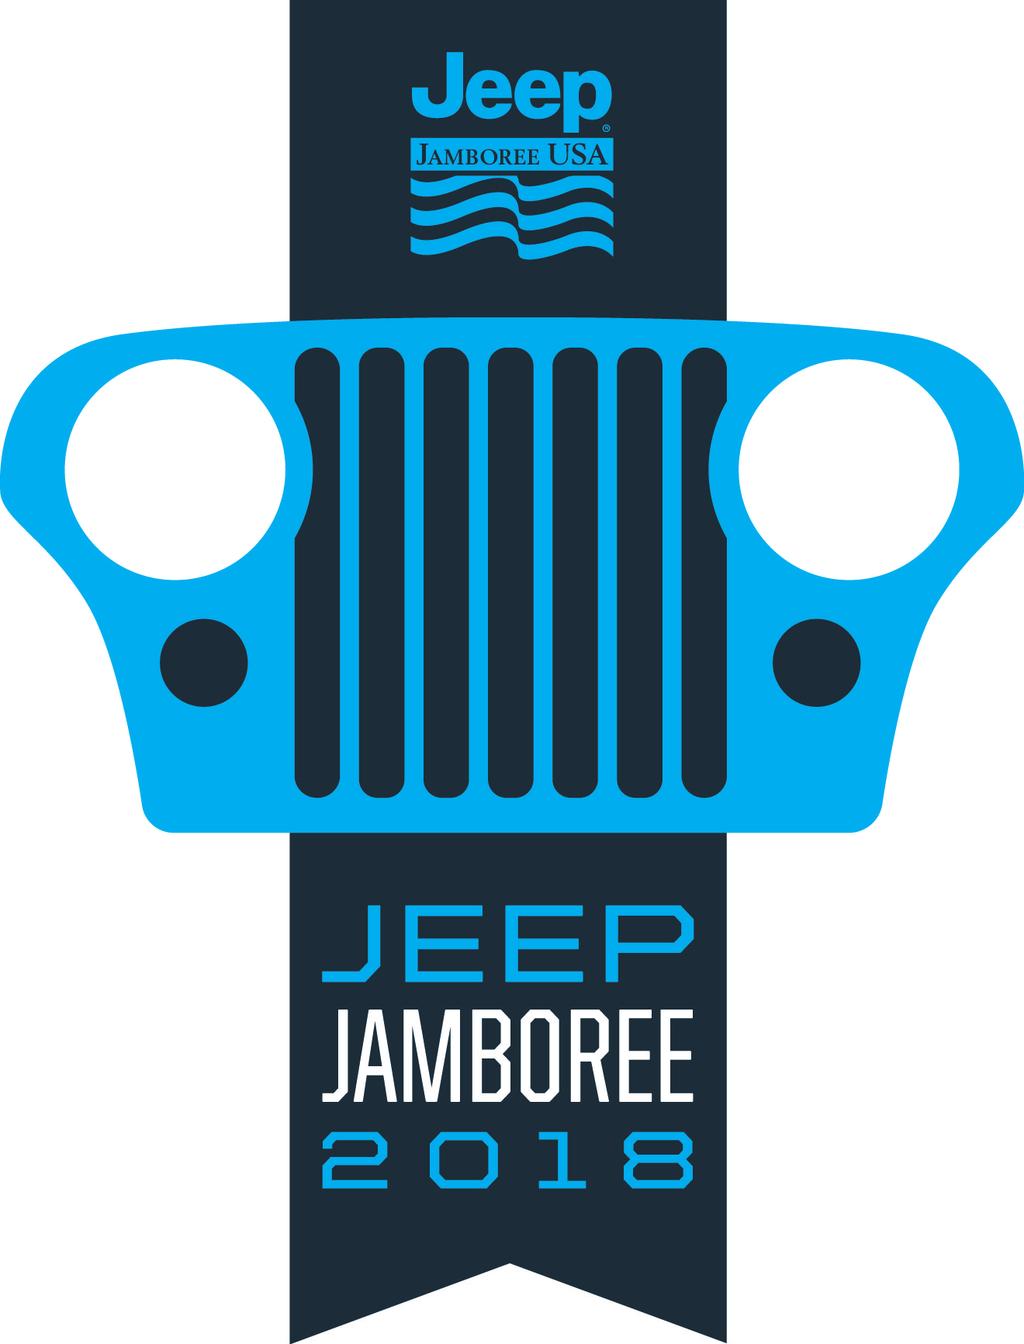 21st Penn s Woods Jeep Jamboree